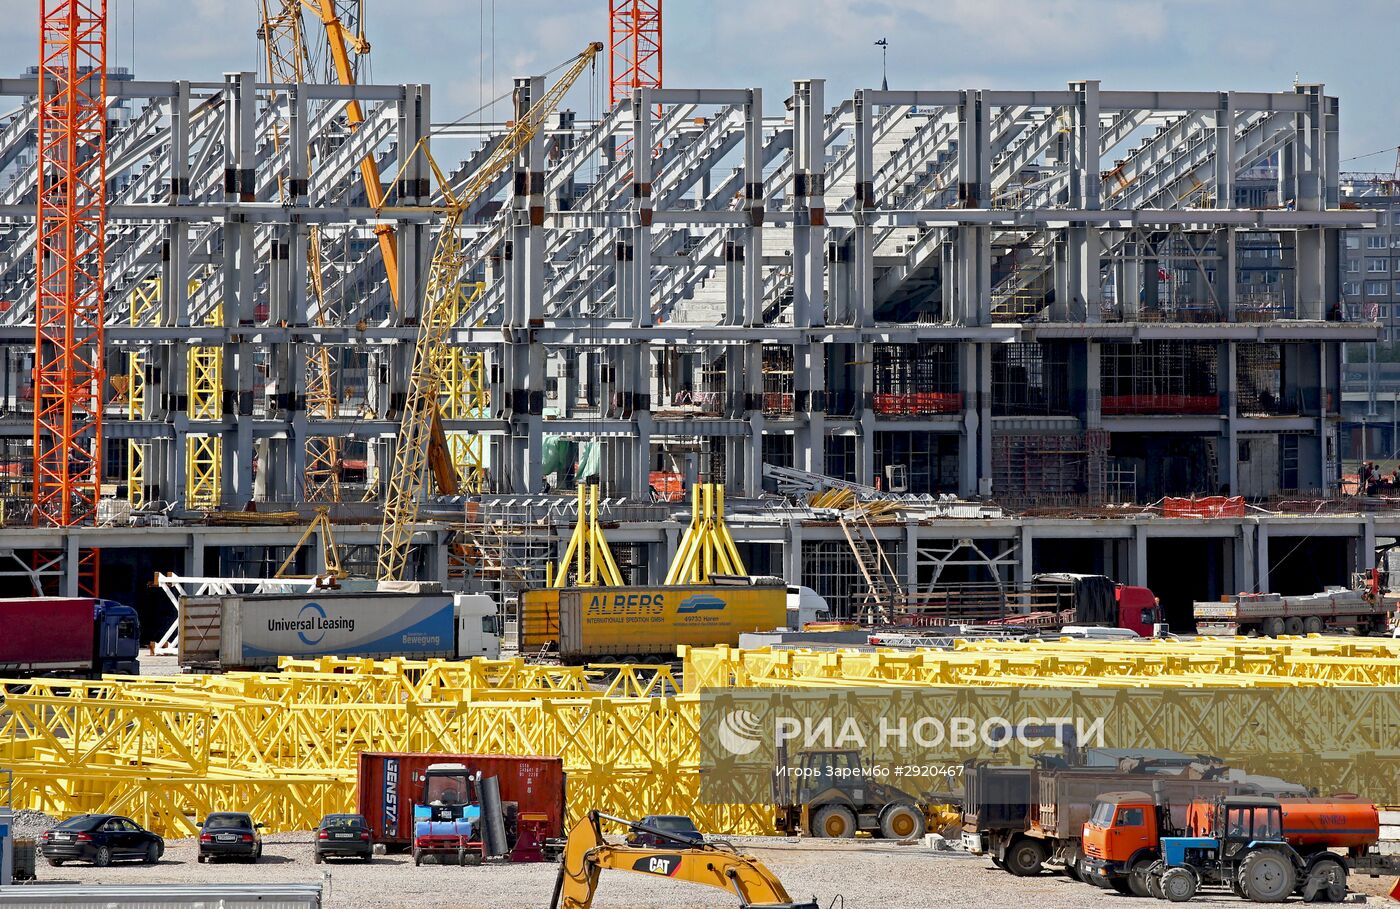 Монтаж металлоконструкций стадиона ЧМ-2018 в Калининграде